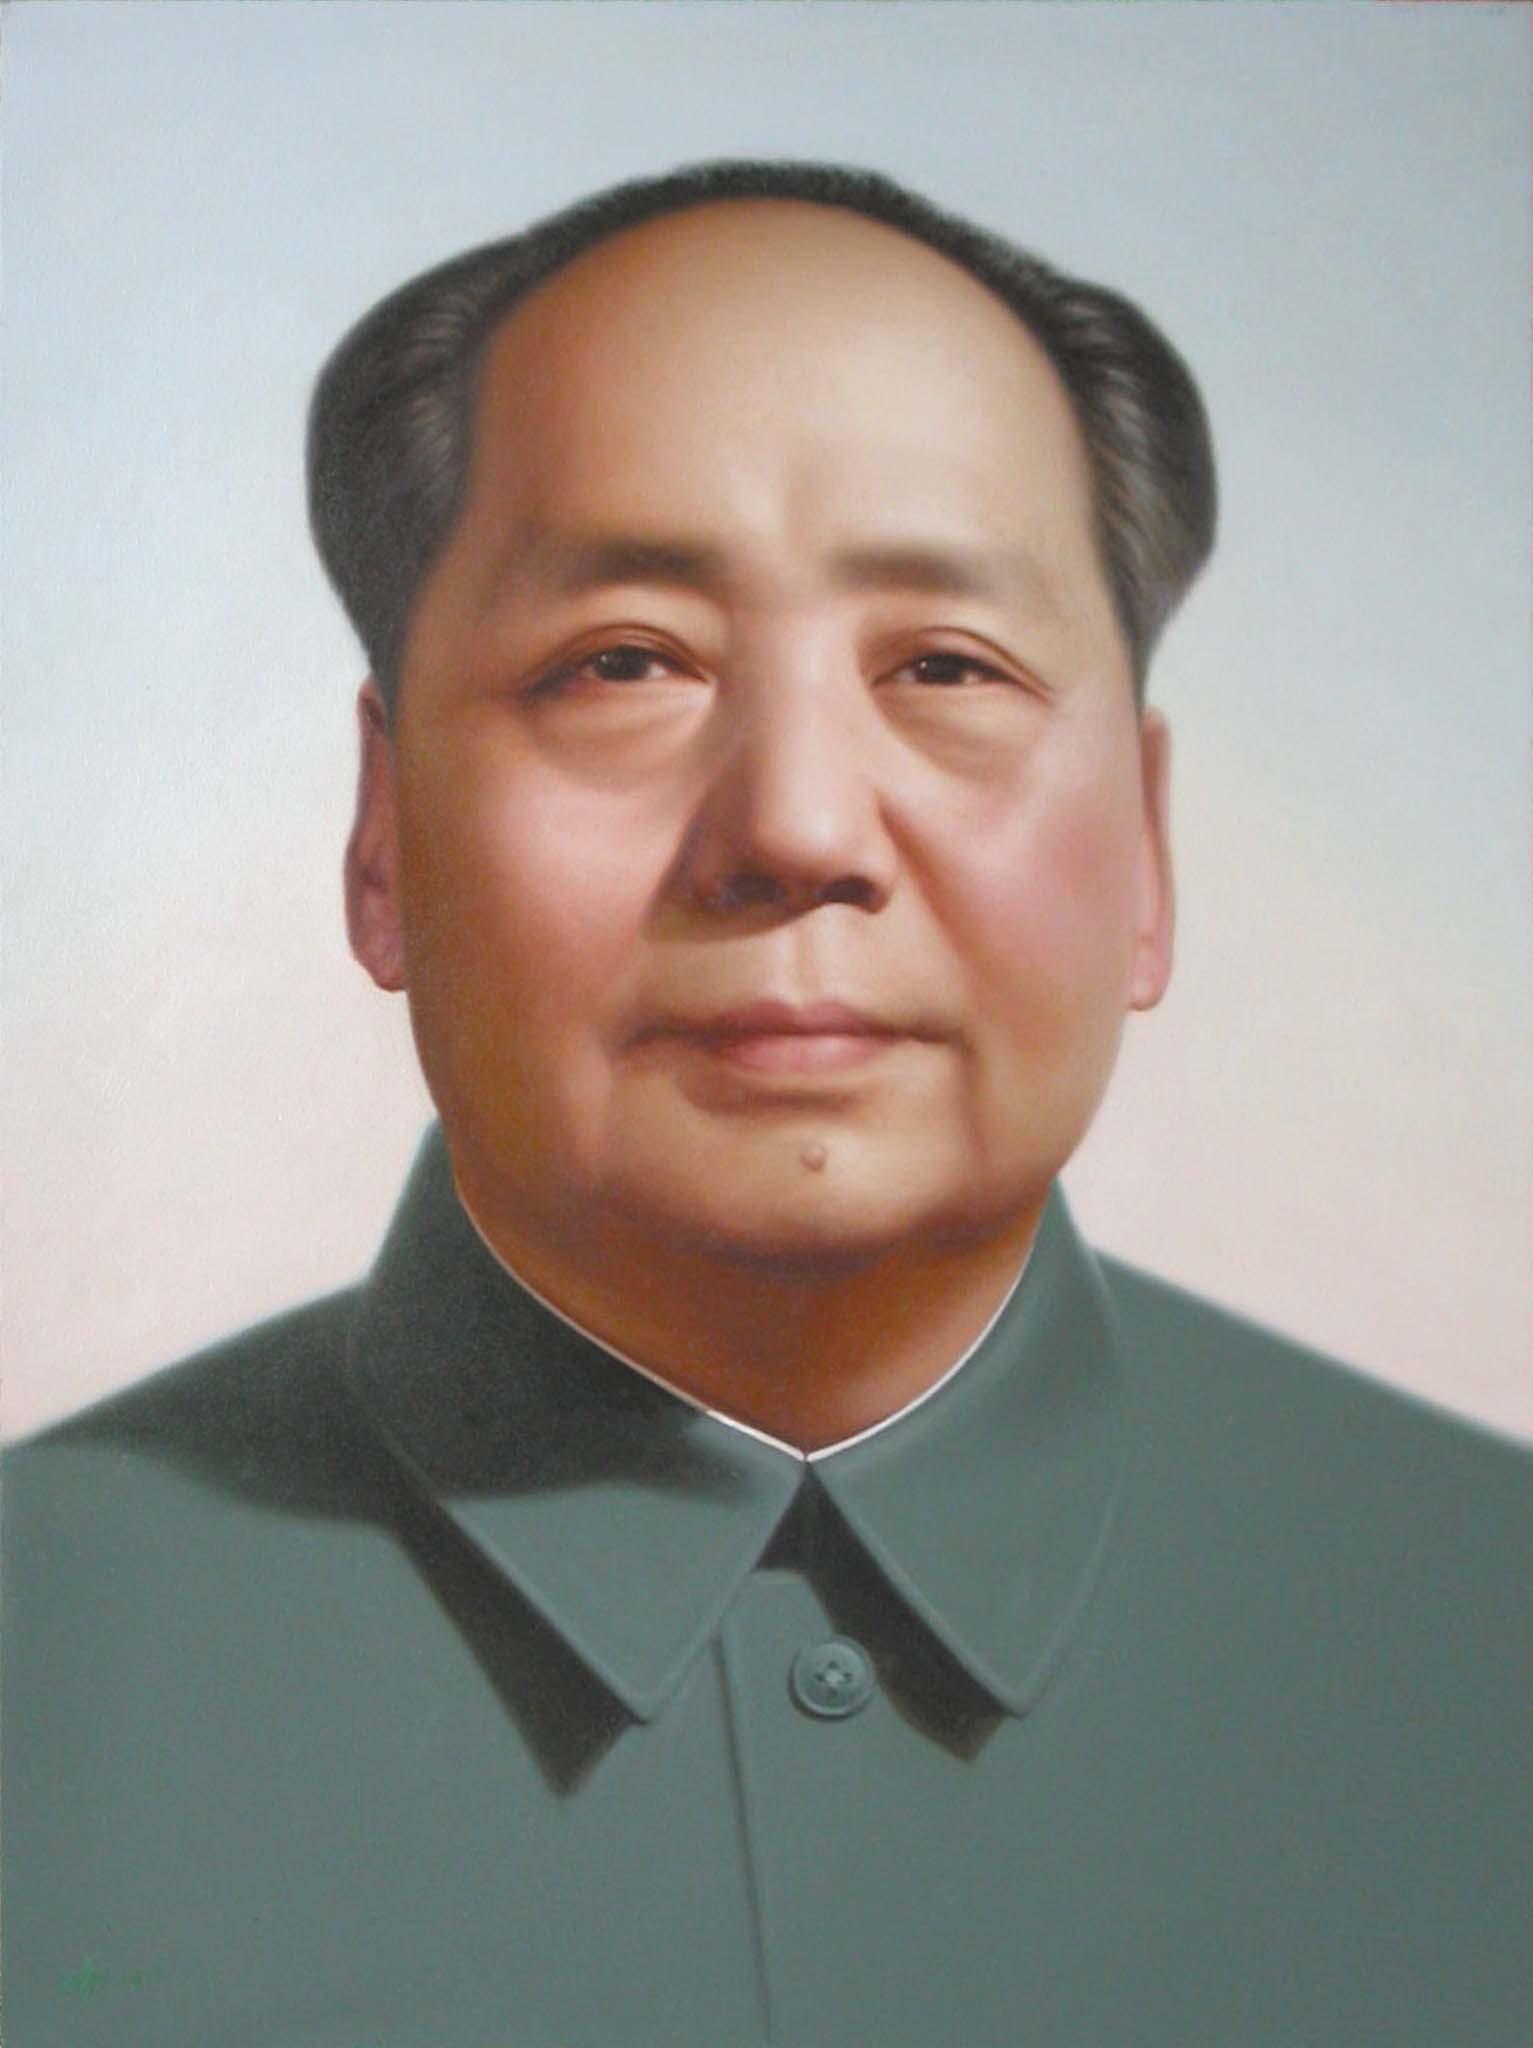 毛泽东像集 1945——1949